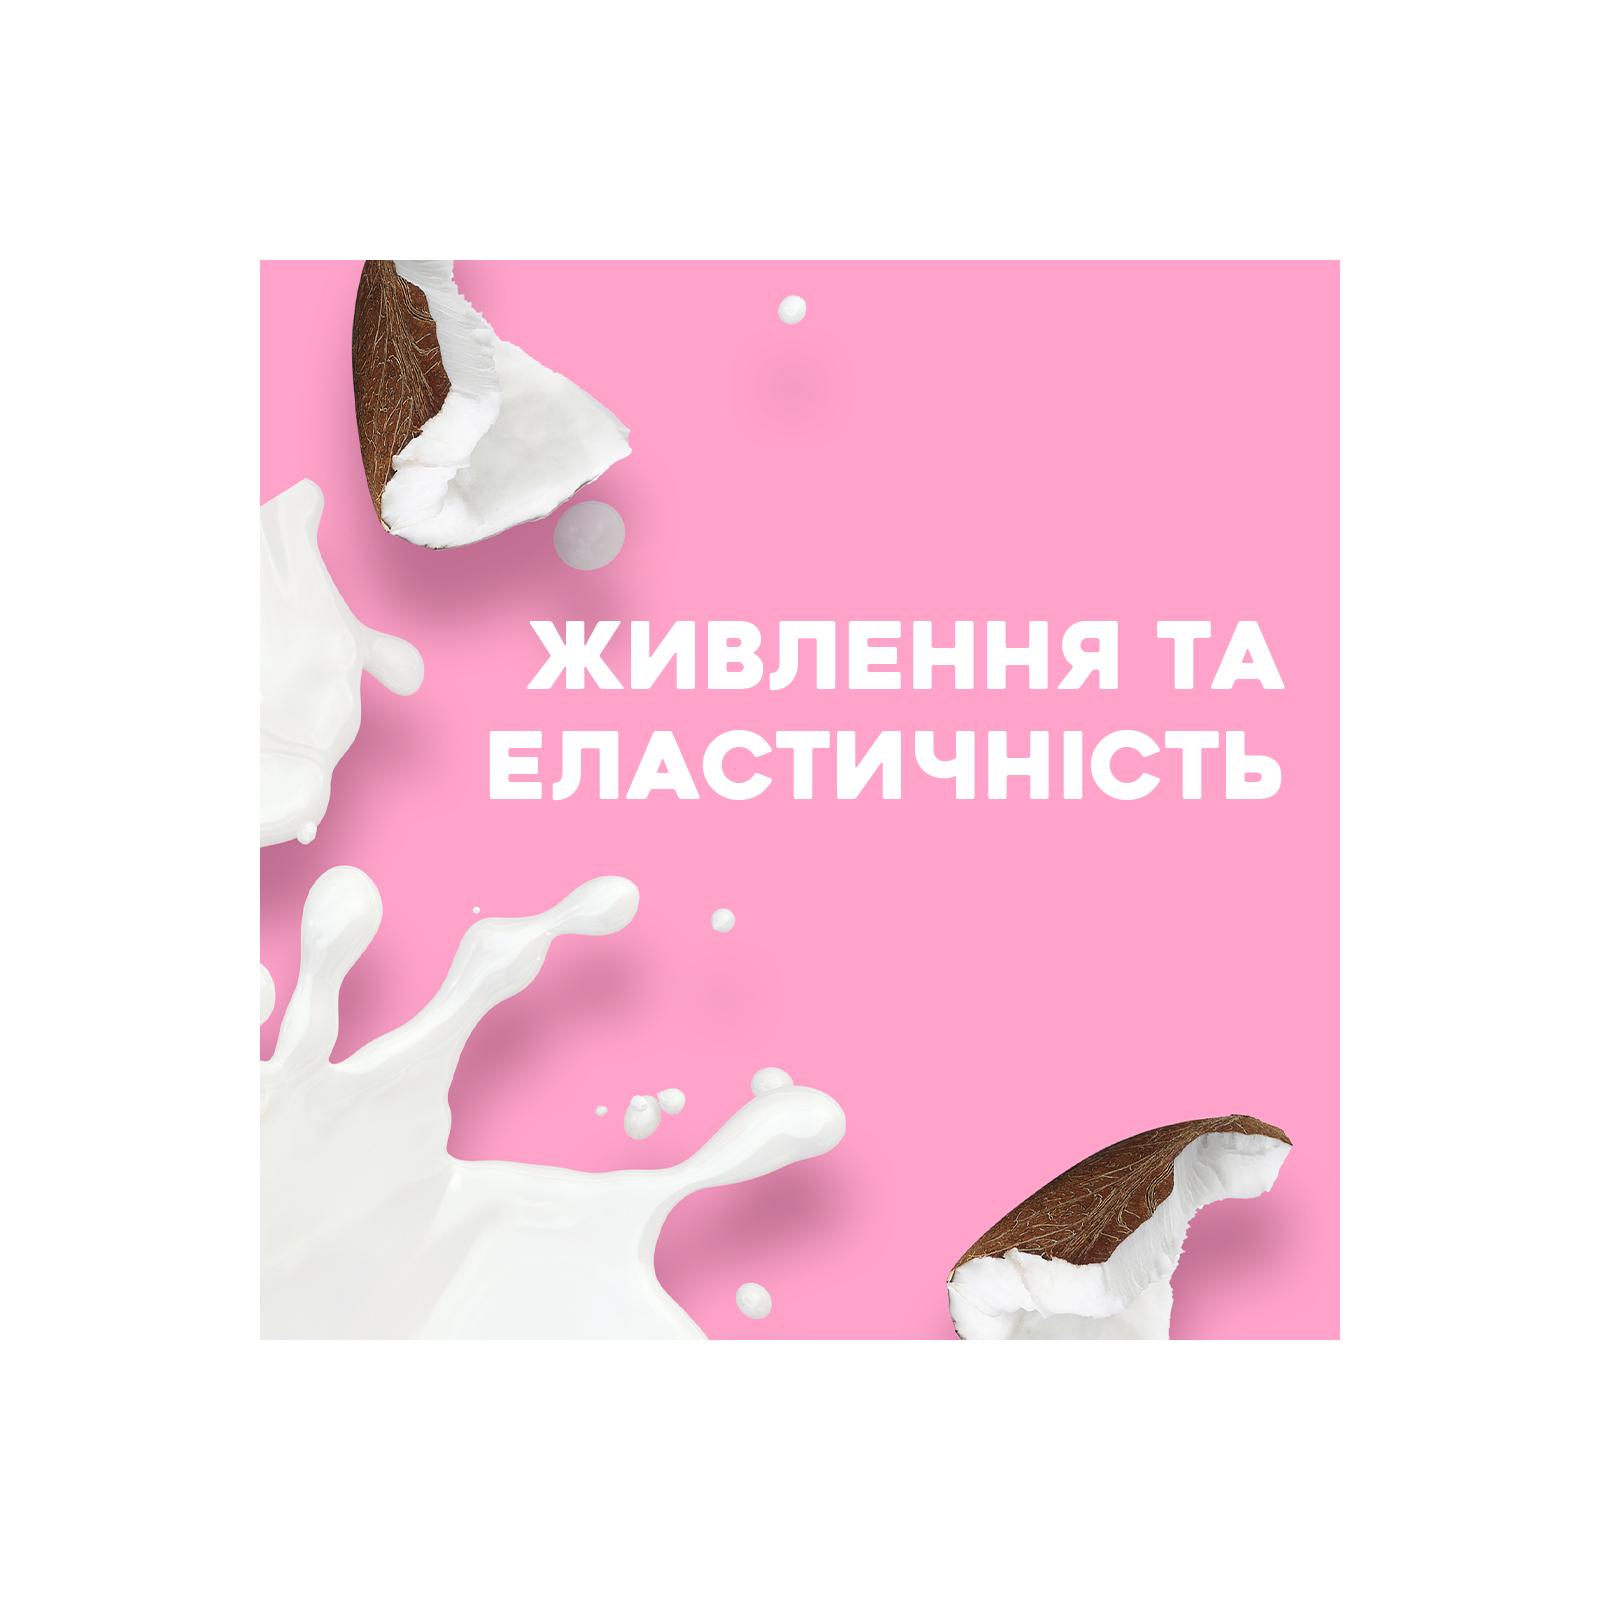 Сыворотка для волос OGX Coconut Milk Питательная против ломкости с кокосовым молоком 100 мл (0022796970084) изображение 3